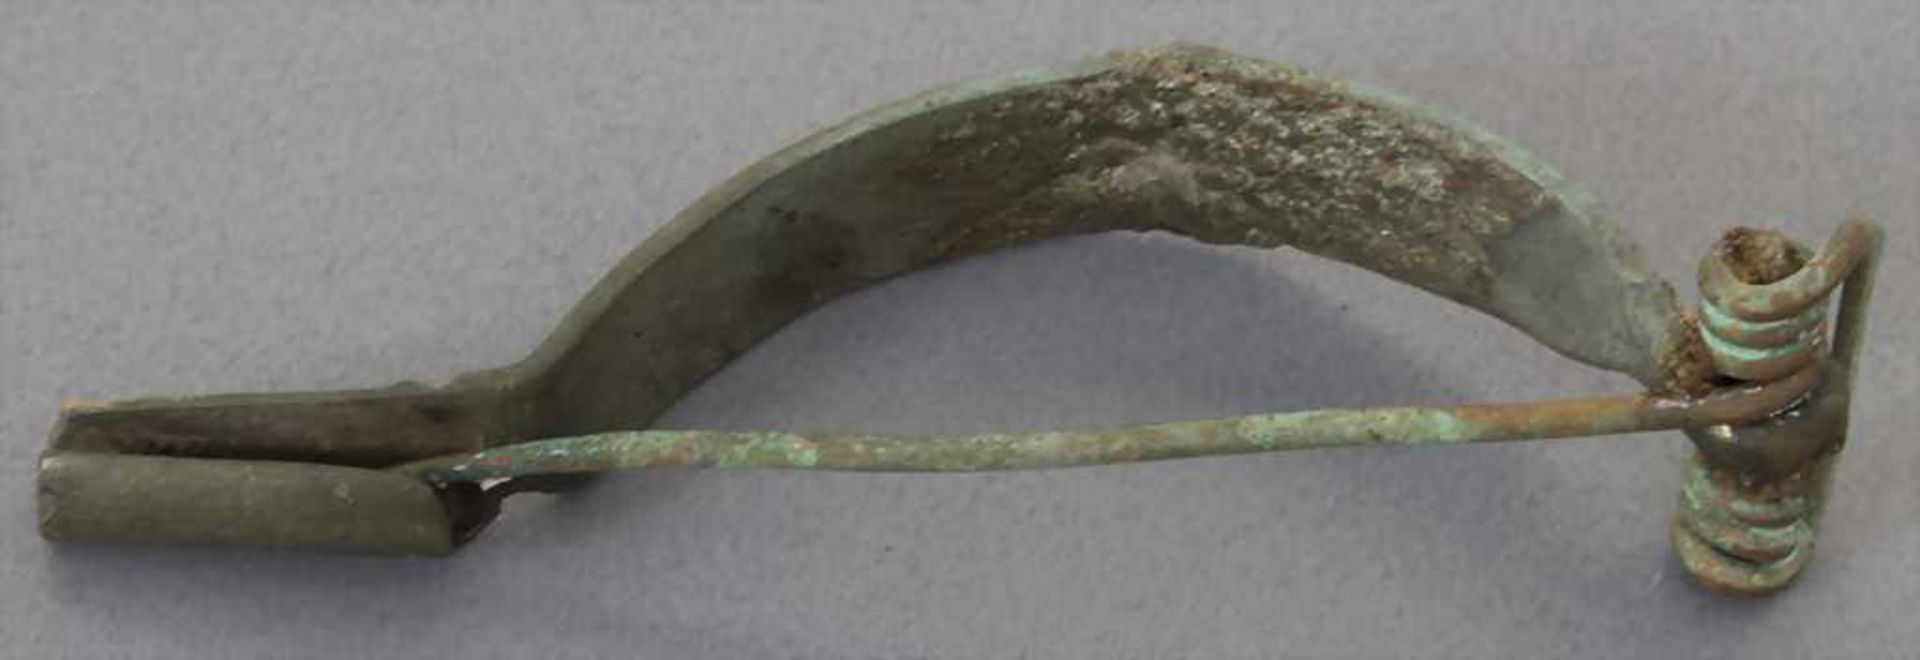 Keltische Fibel / A celtic fibulaMaterial: Bronze,Länge: 6,7 cm,Zustand: gut, alt restauriert, - Bild 2 aus 3